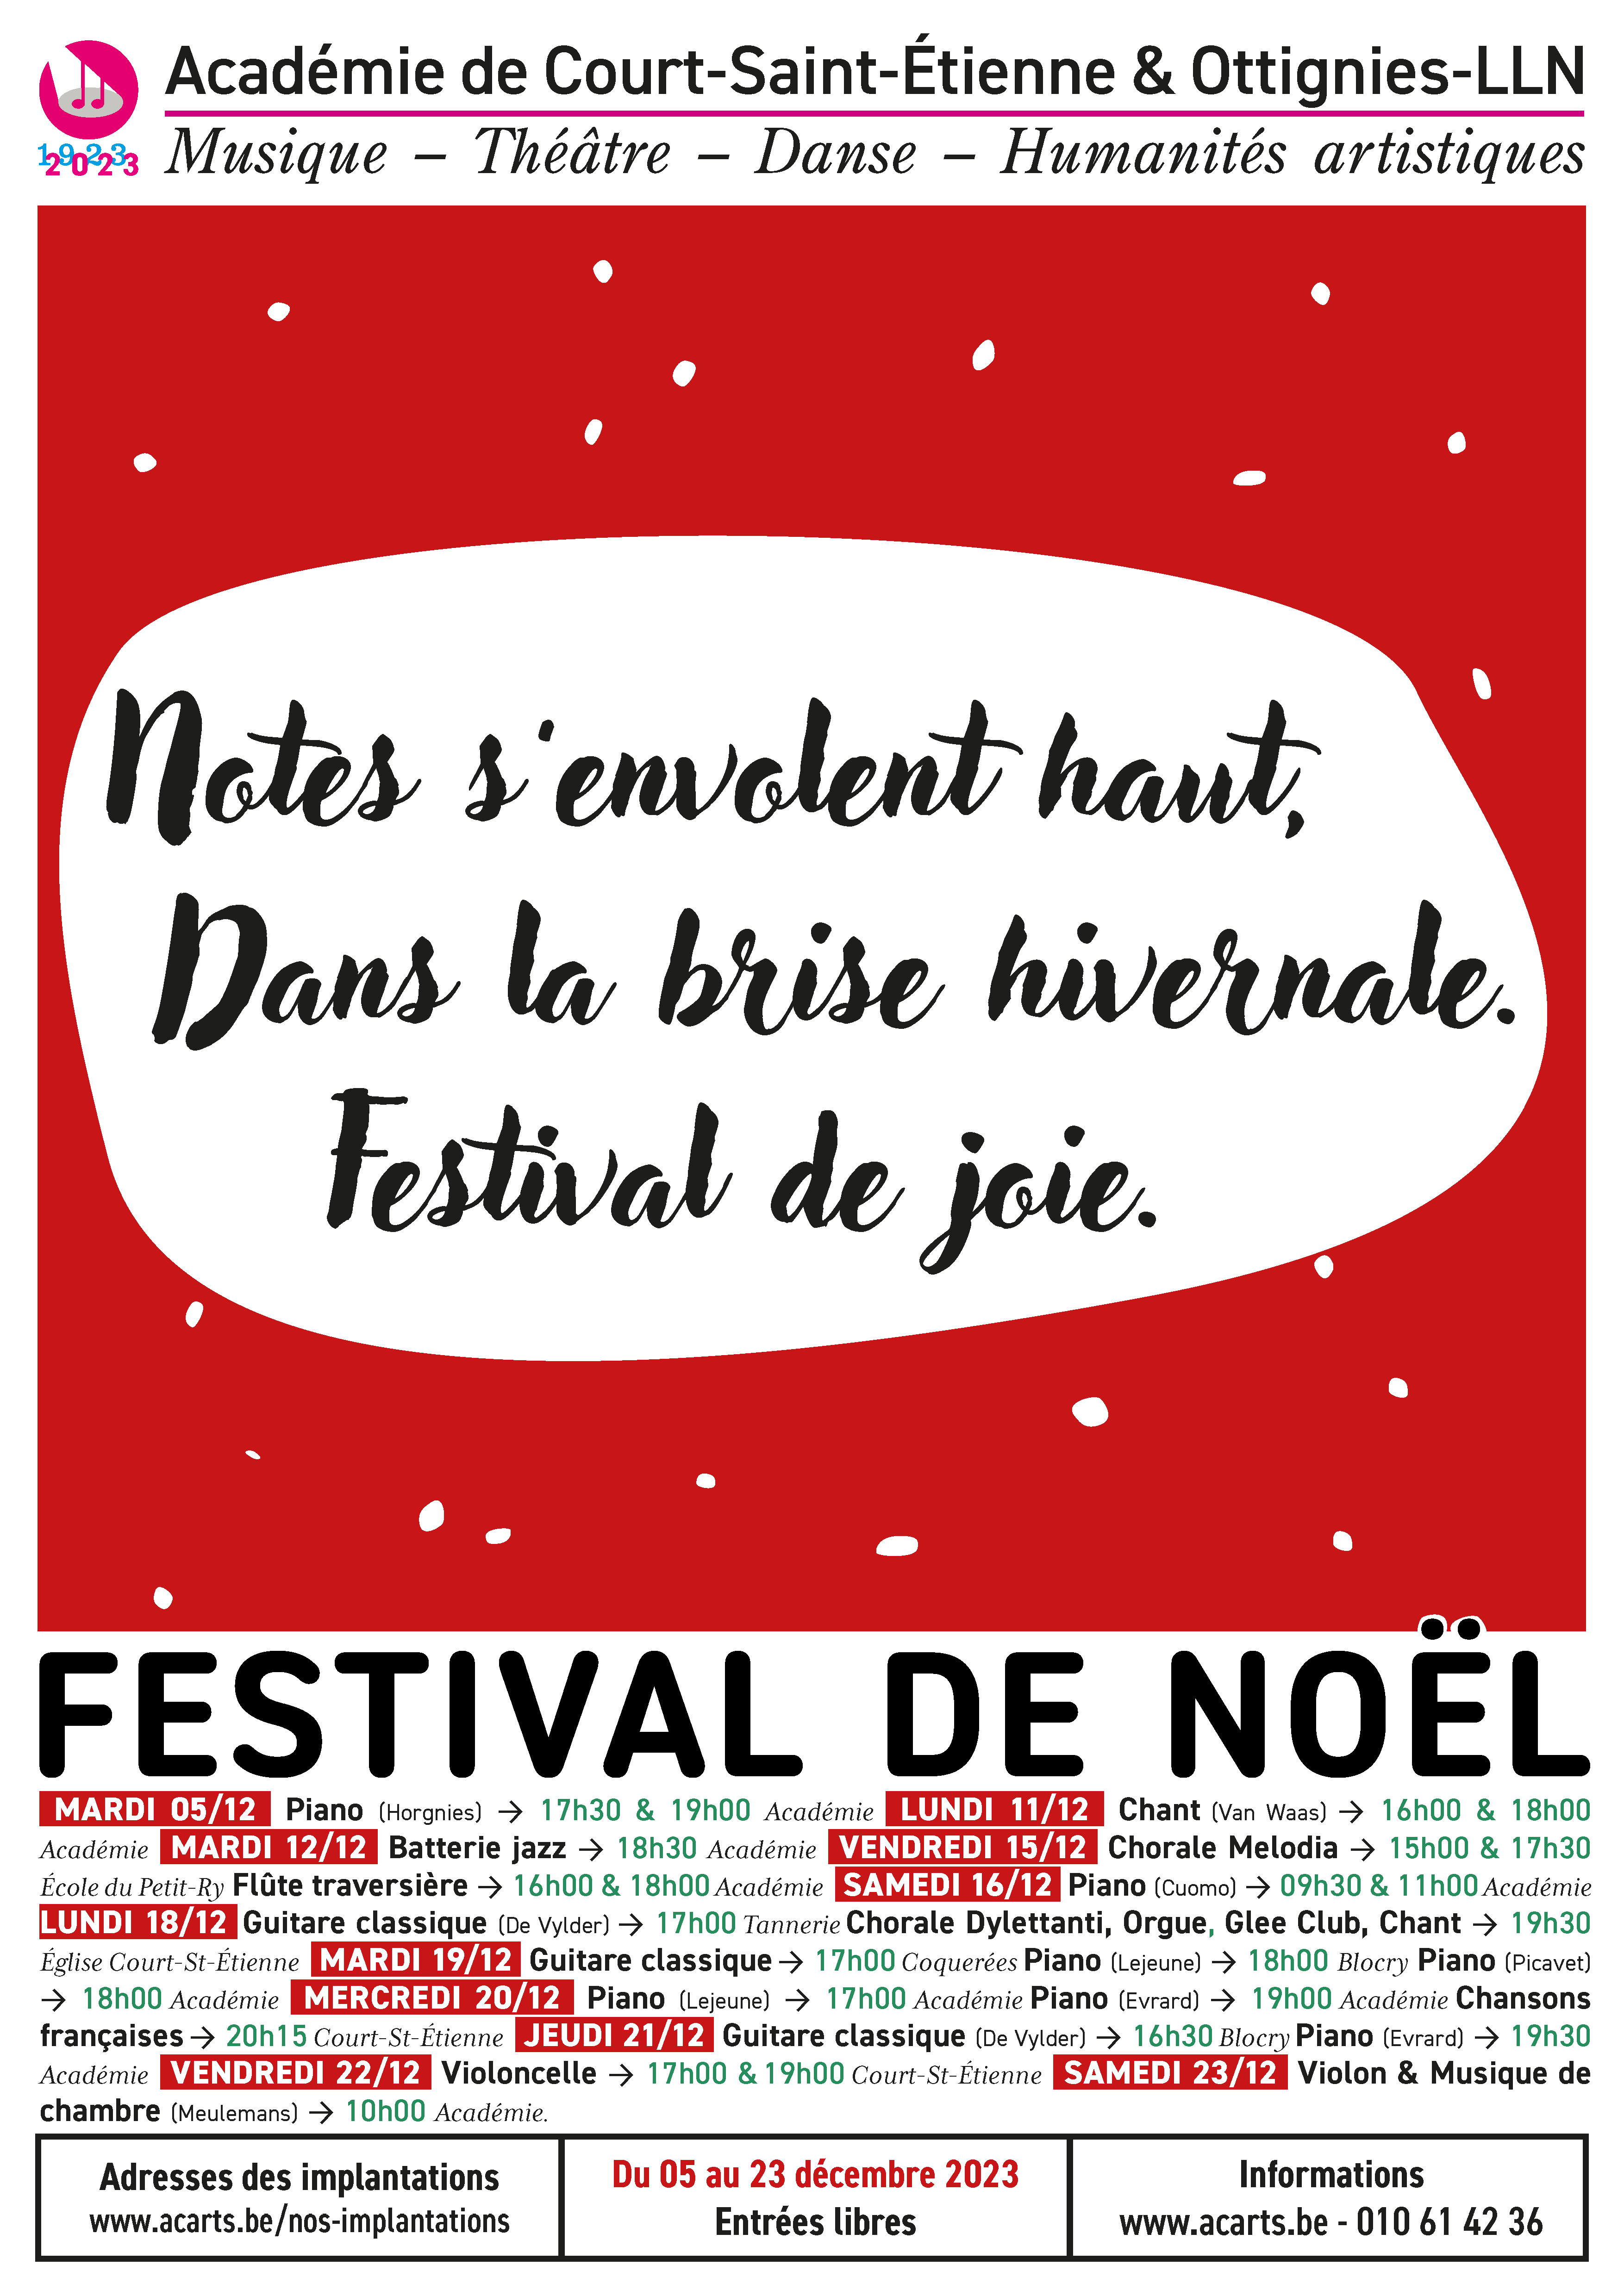 Affiche rouge pour le 'Festival de Noël' annonçant divers concerts et représentations par l'Académie de Court-Saint-Étienne & Ottignies-LLN du 5 au 23 décembre 2023, détails des dates et des performances listées, entrée libre.